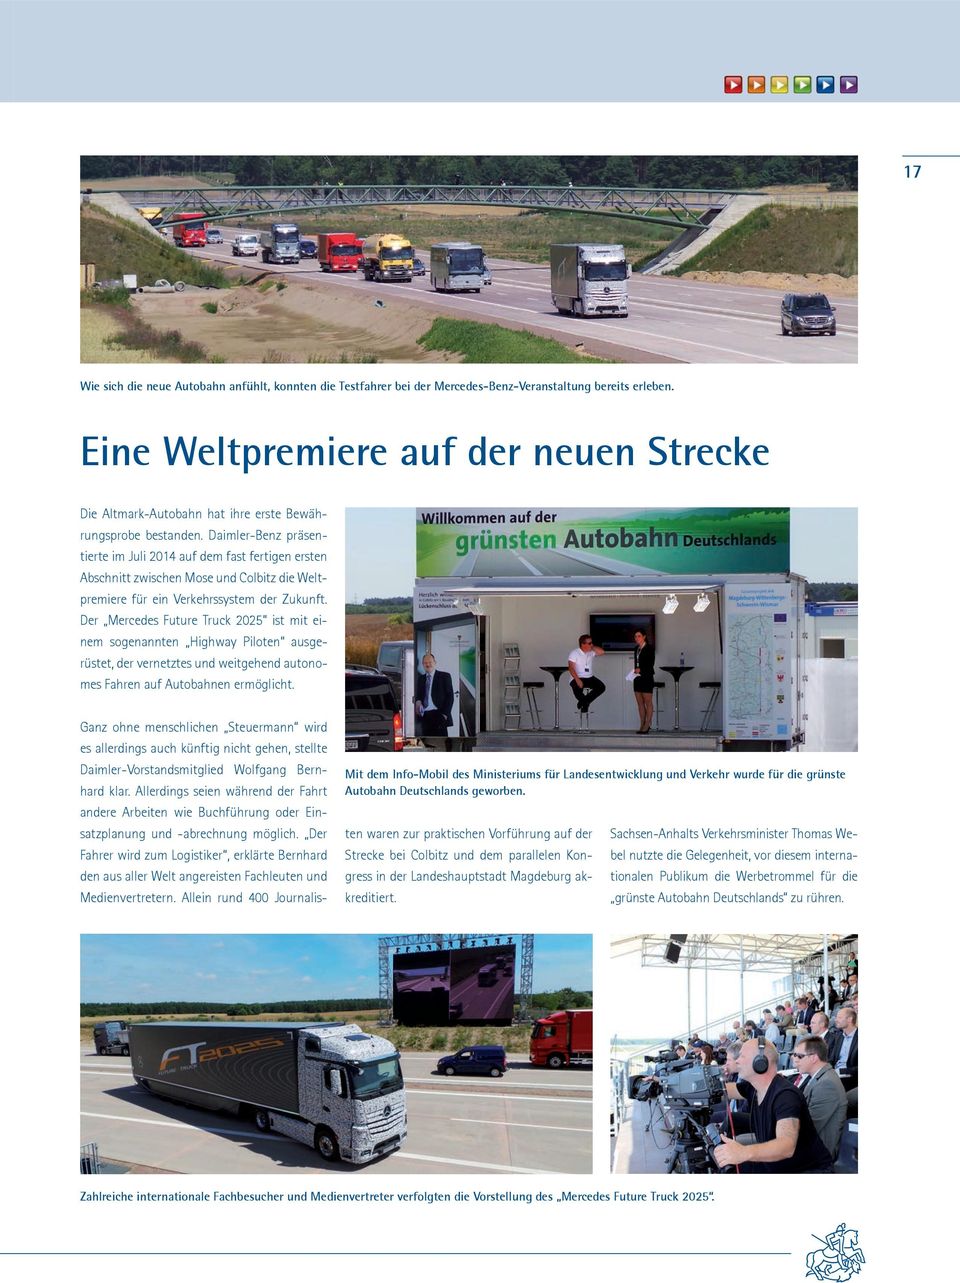 Daimler-Benz präsentierte im Juli 2014 auf dem fast fertigen ersten Abschnitt zwischen Mose und Colbitz die Weltpremiere für ein Verkehrssystem der Zukunft.